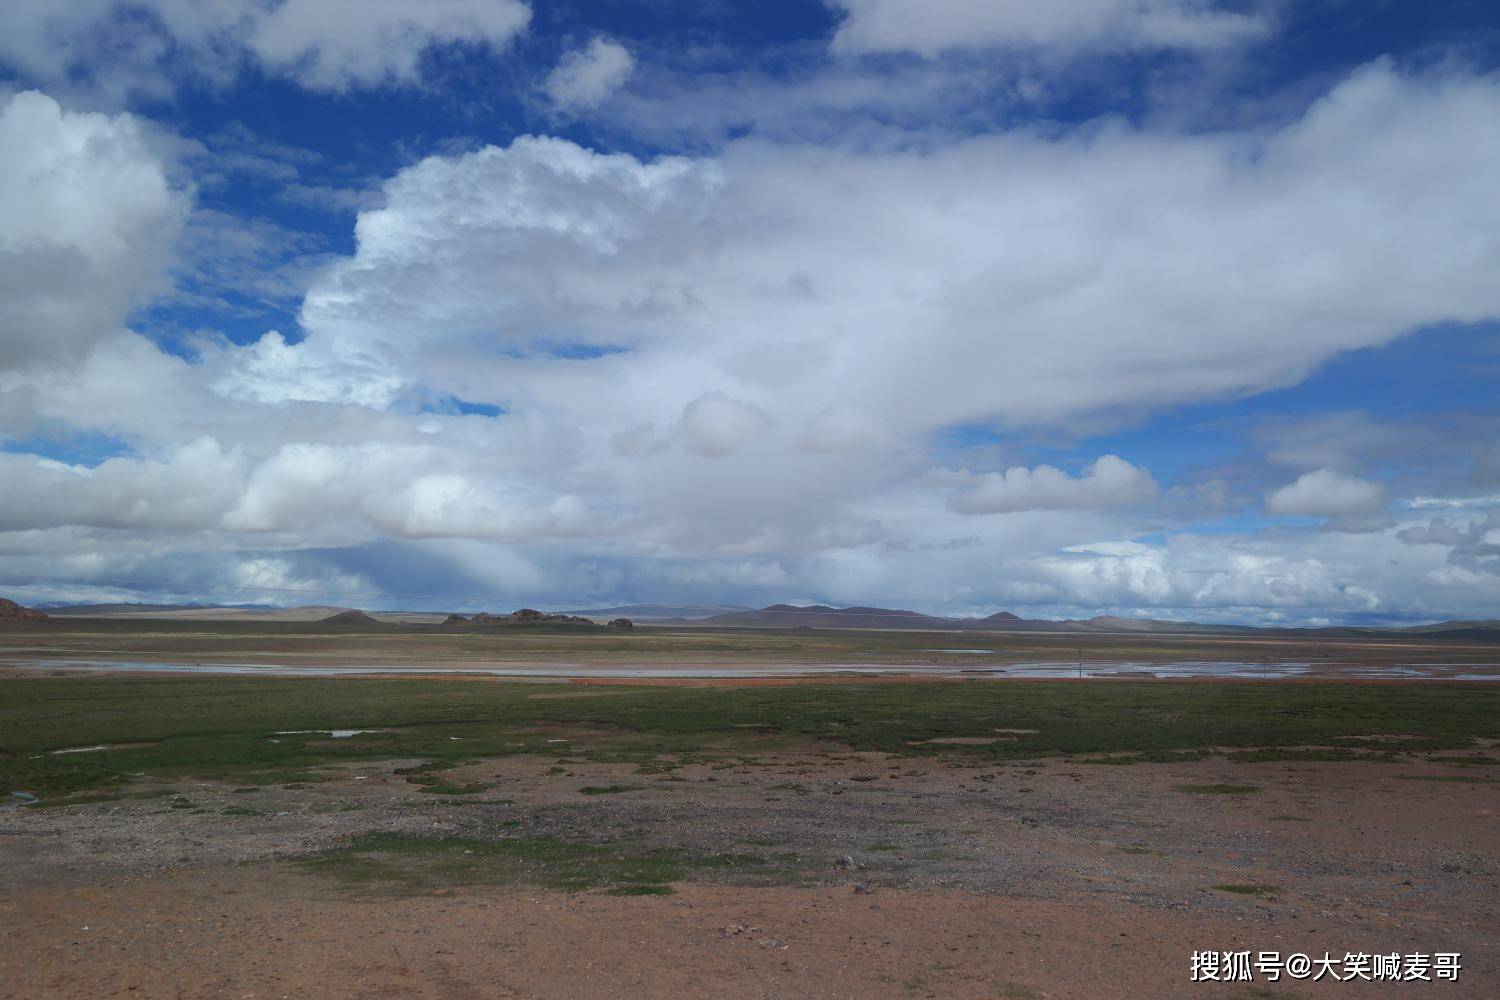 进藏海拔最高的线路, 穿越了念青唐古拉山脉, 被誉为生命的禁区